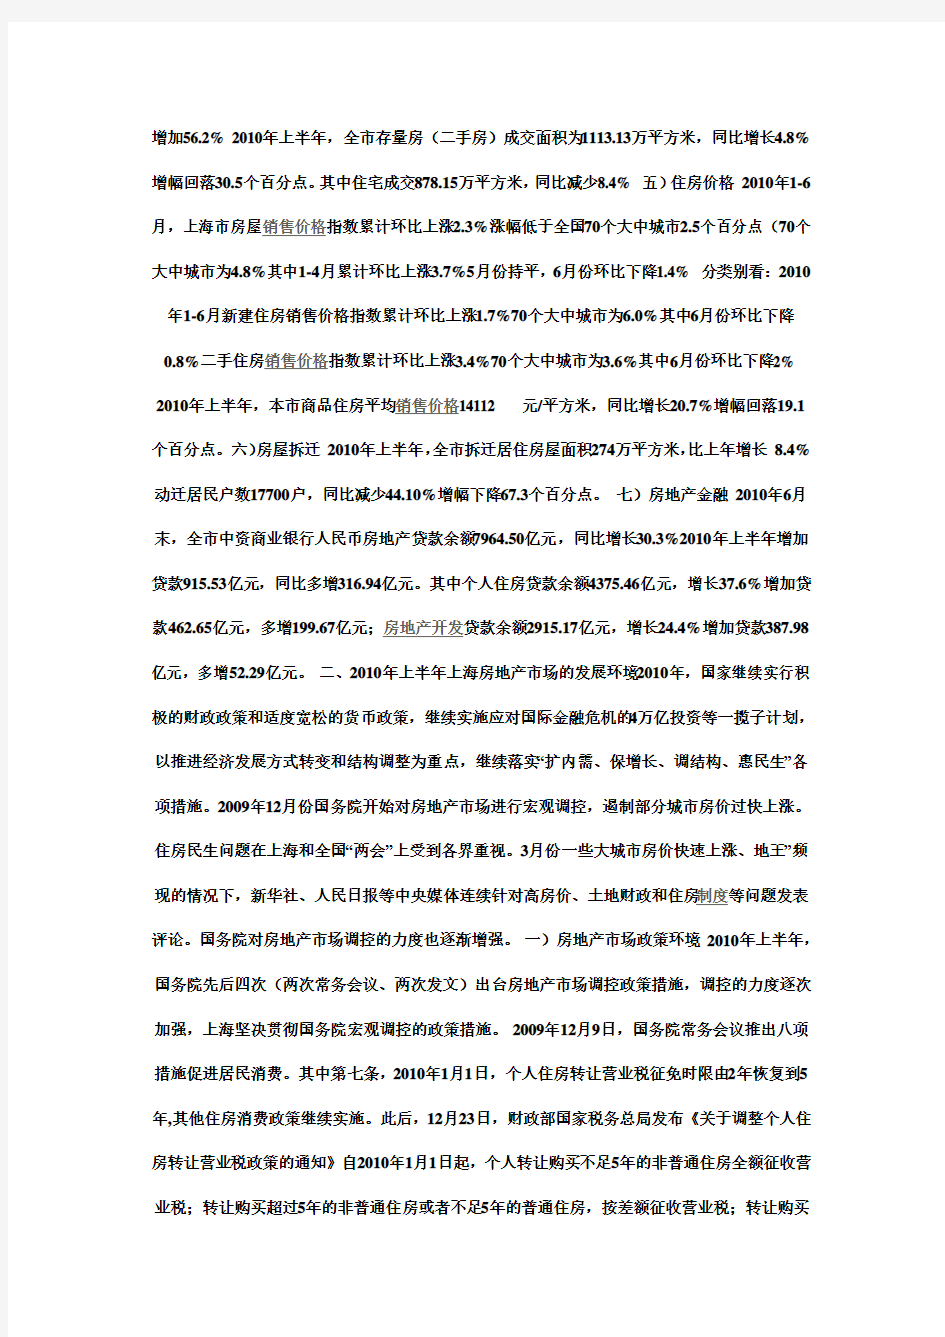 上海房地产市场调研报告完整版